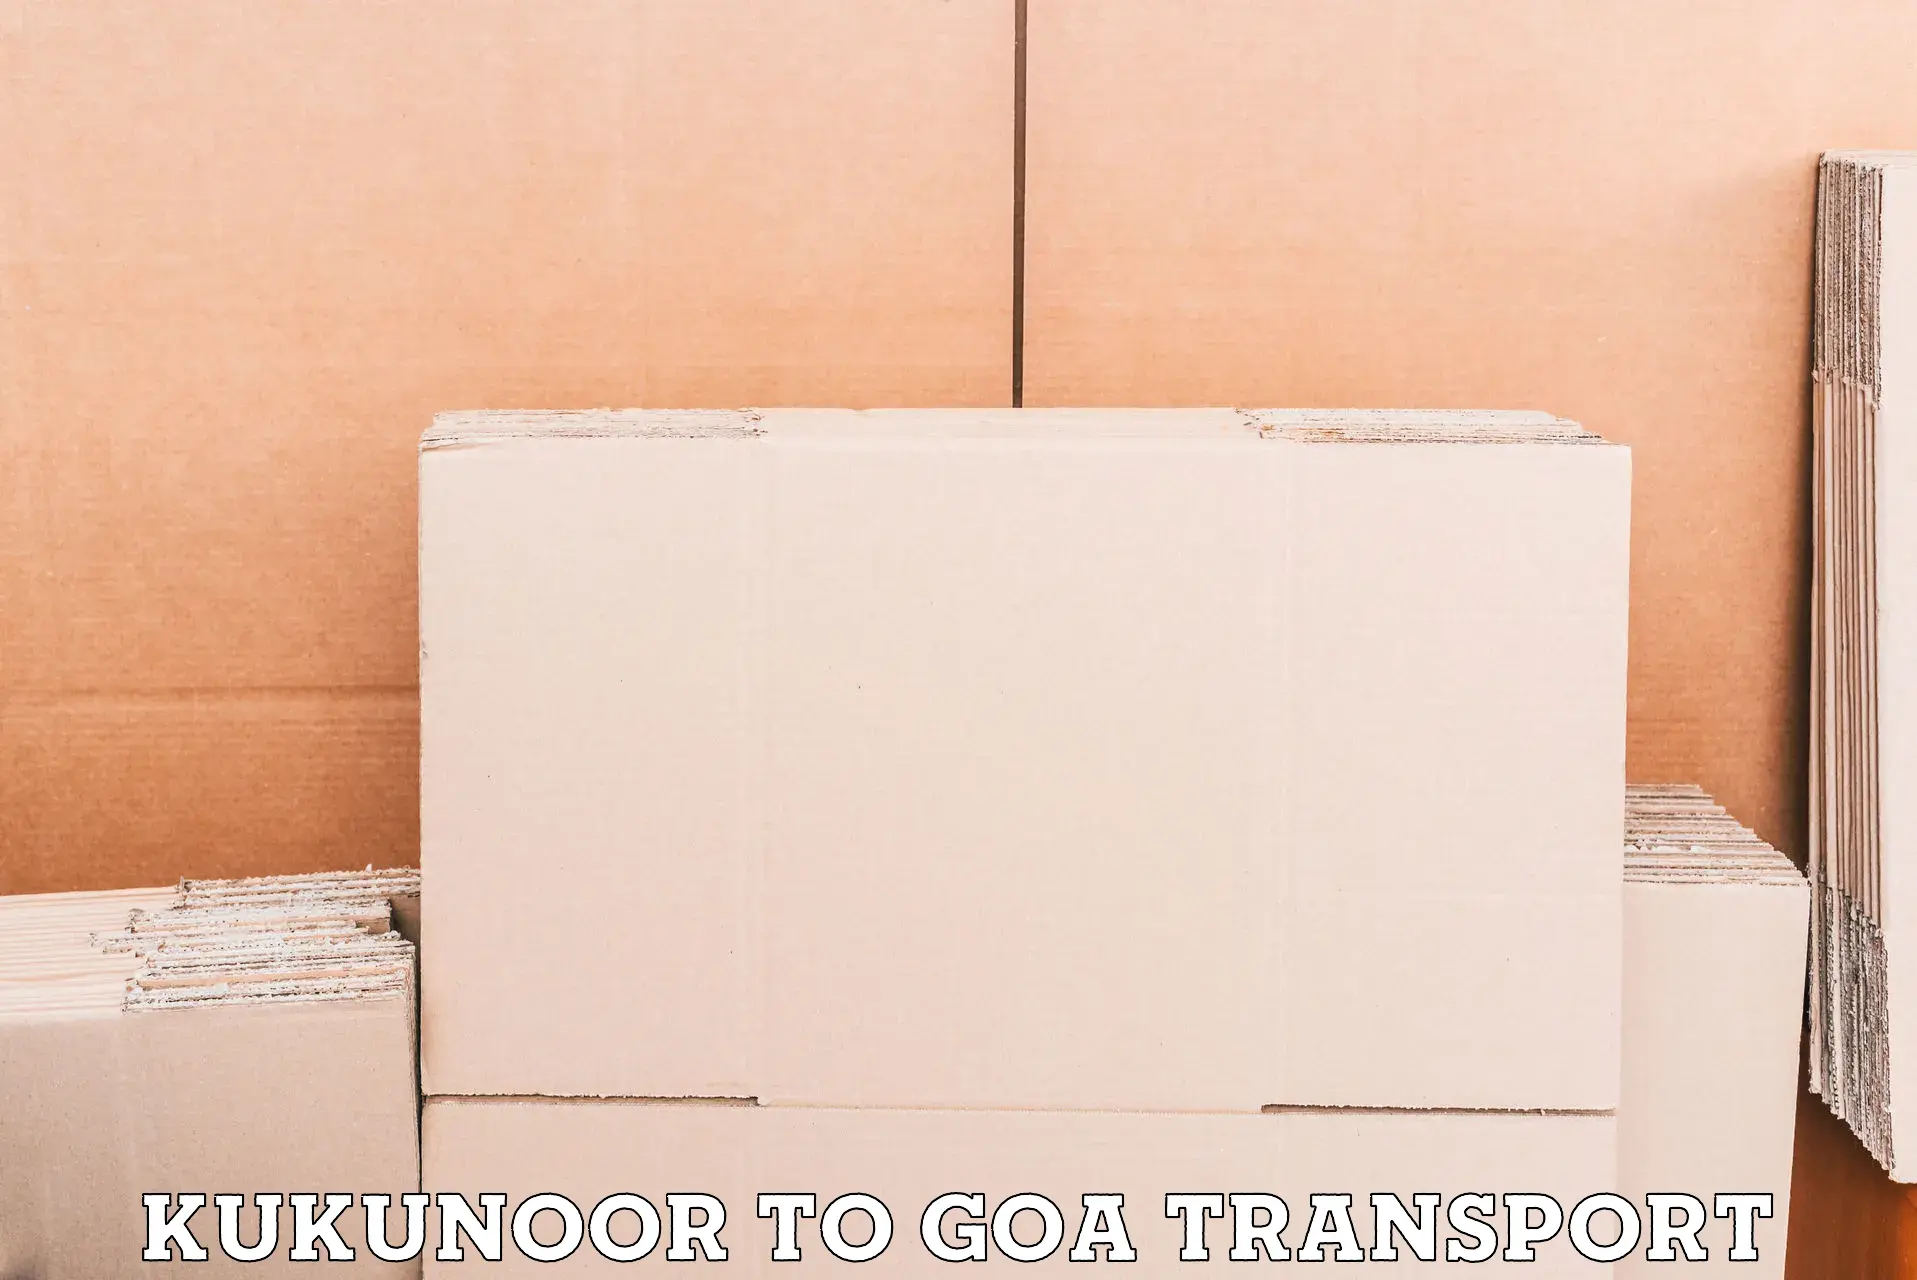 Commercial transport service Kukunoor to Goa University